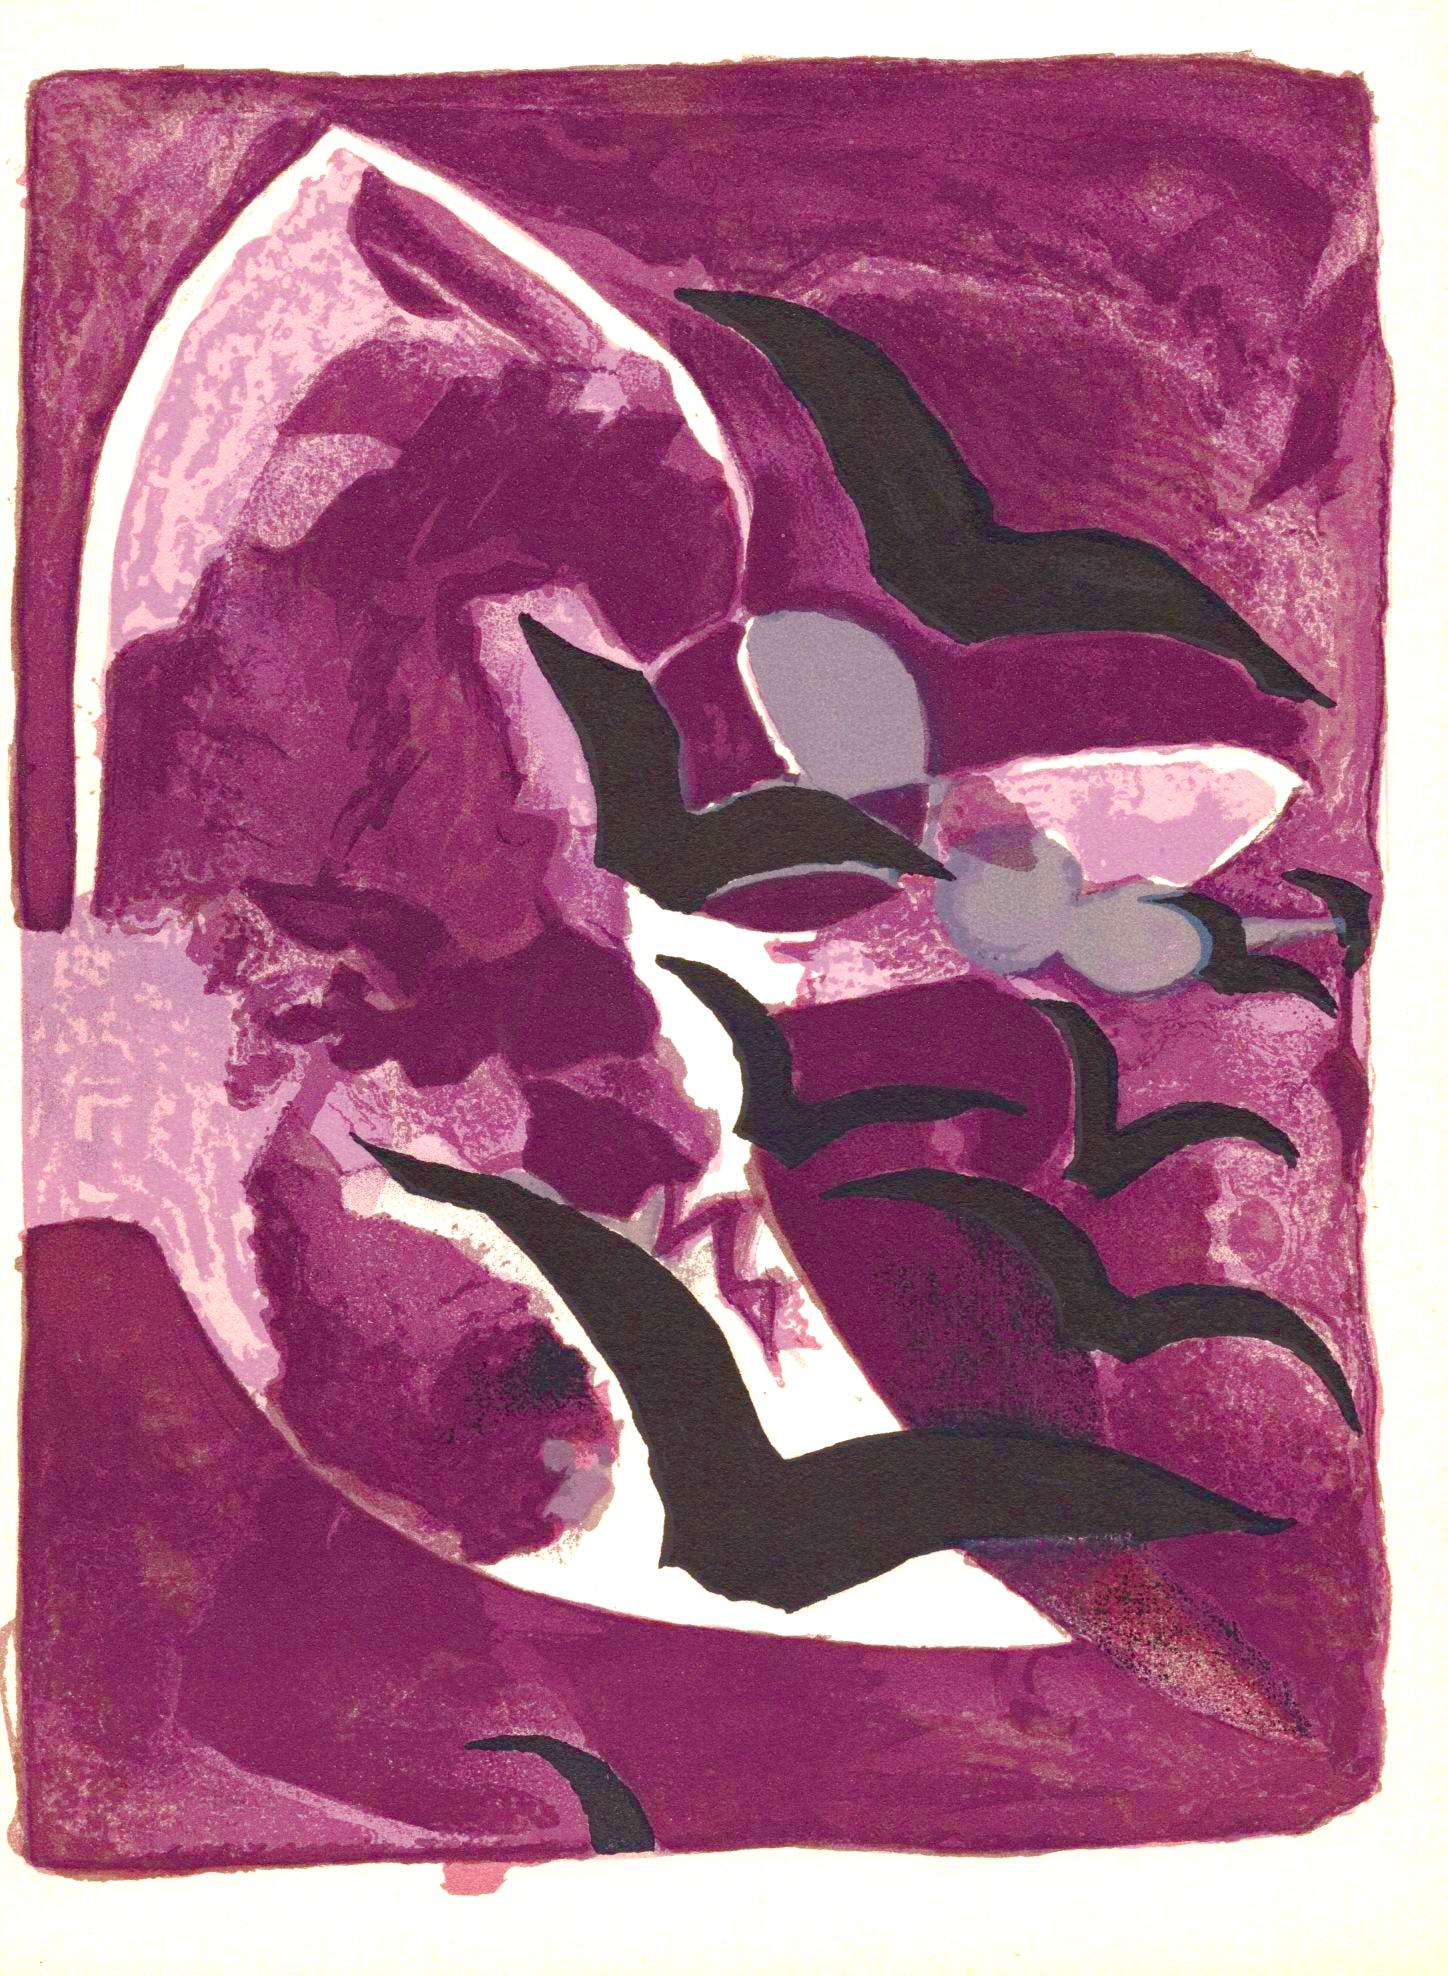 Braque, Les oiseaux de nuit, Prints from the Mourlot Press (after)